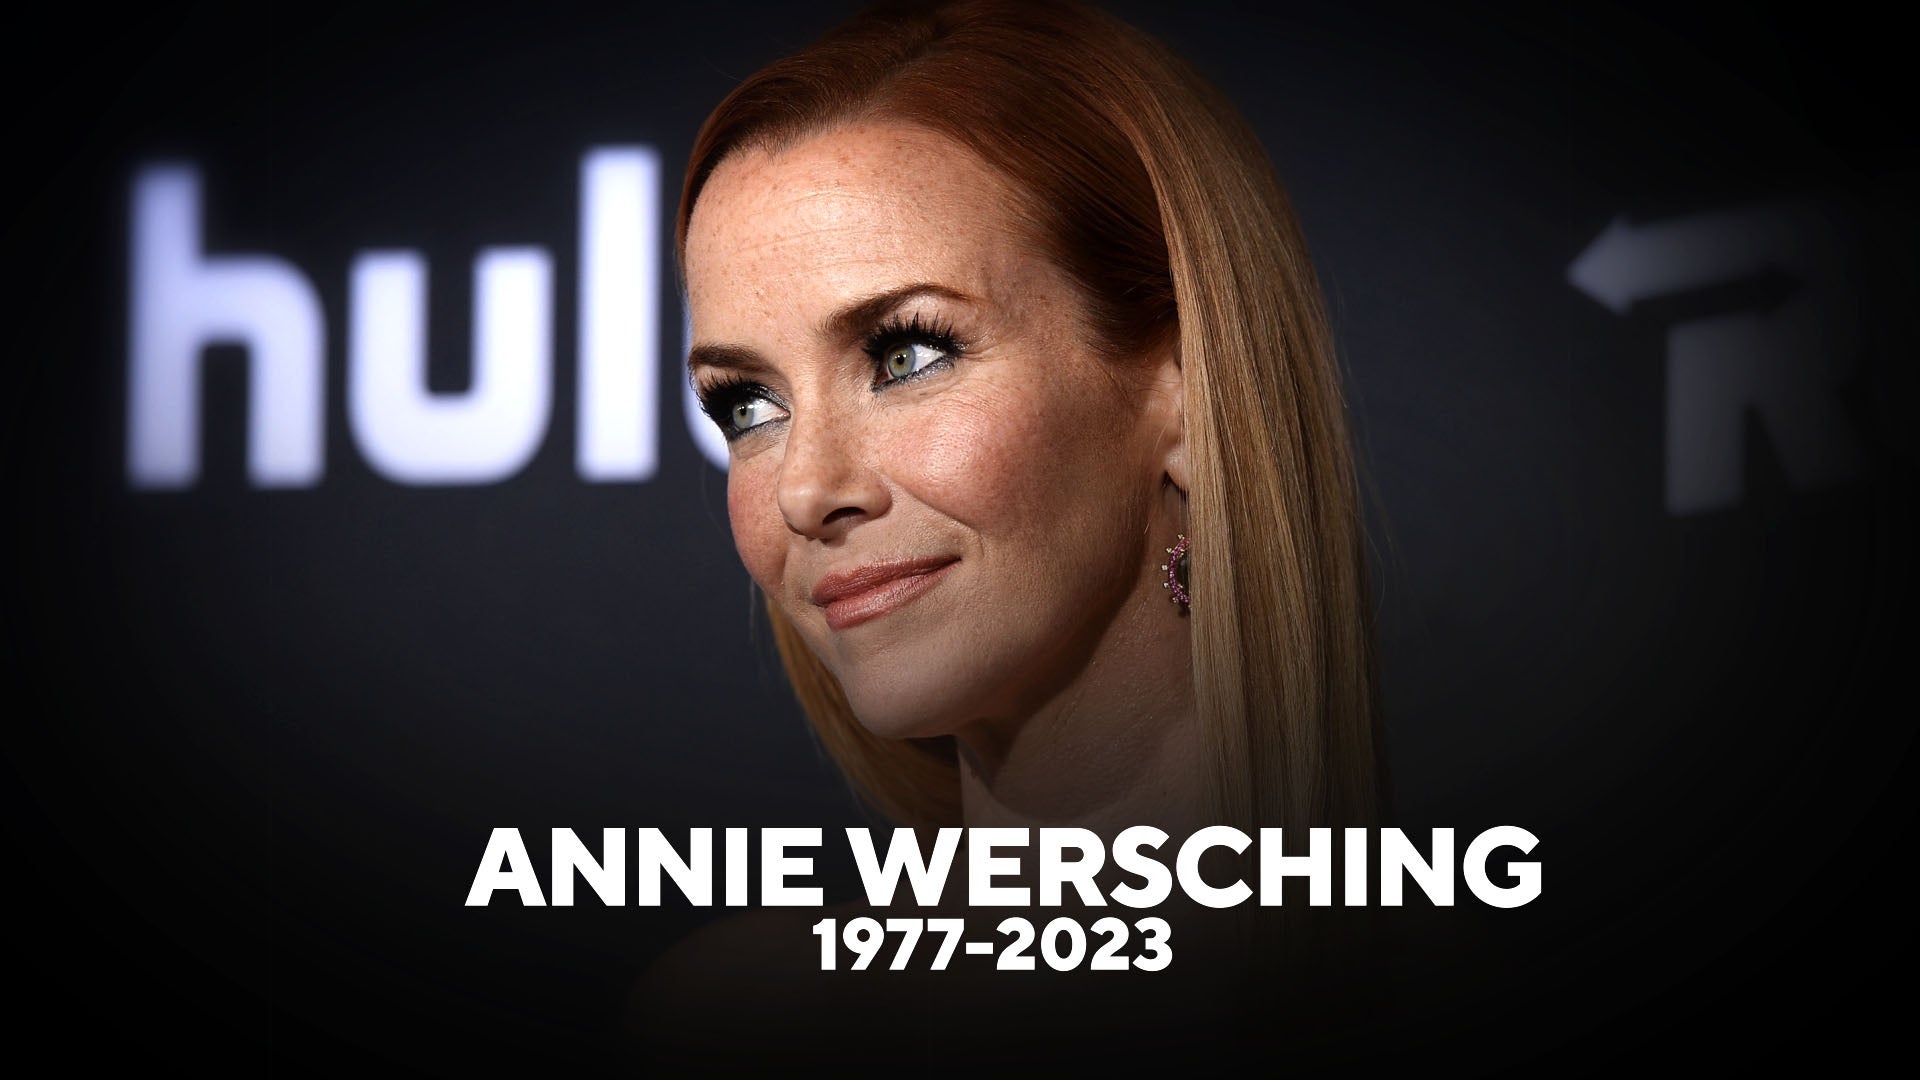 Annie Wersching 'Star Trek' and '24' Actress Dead at 45